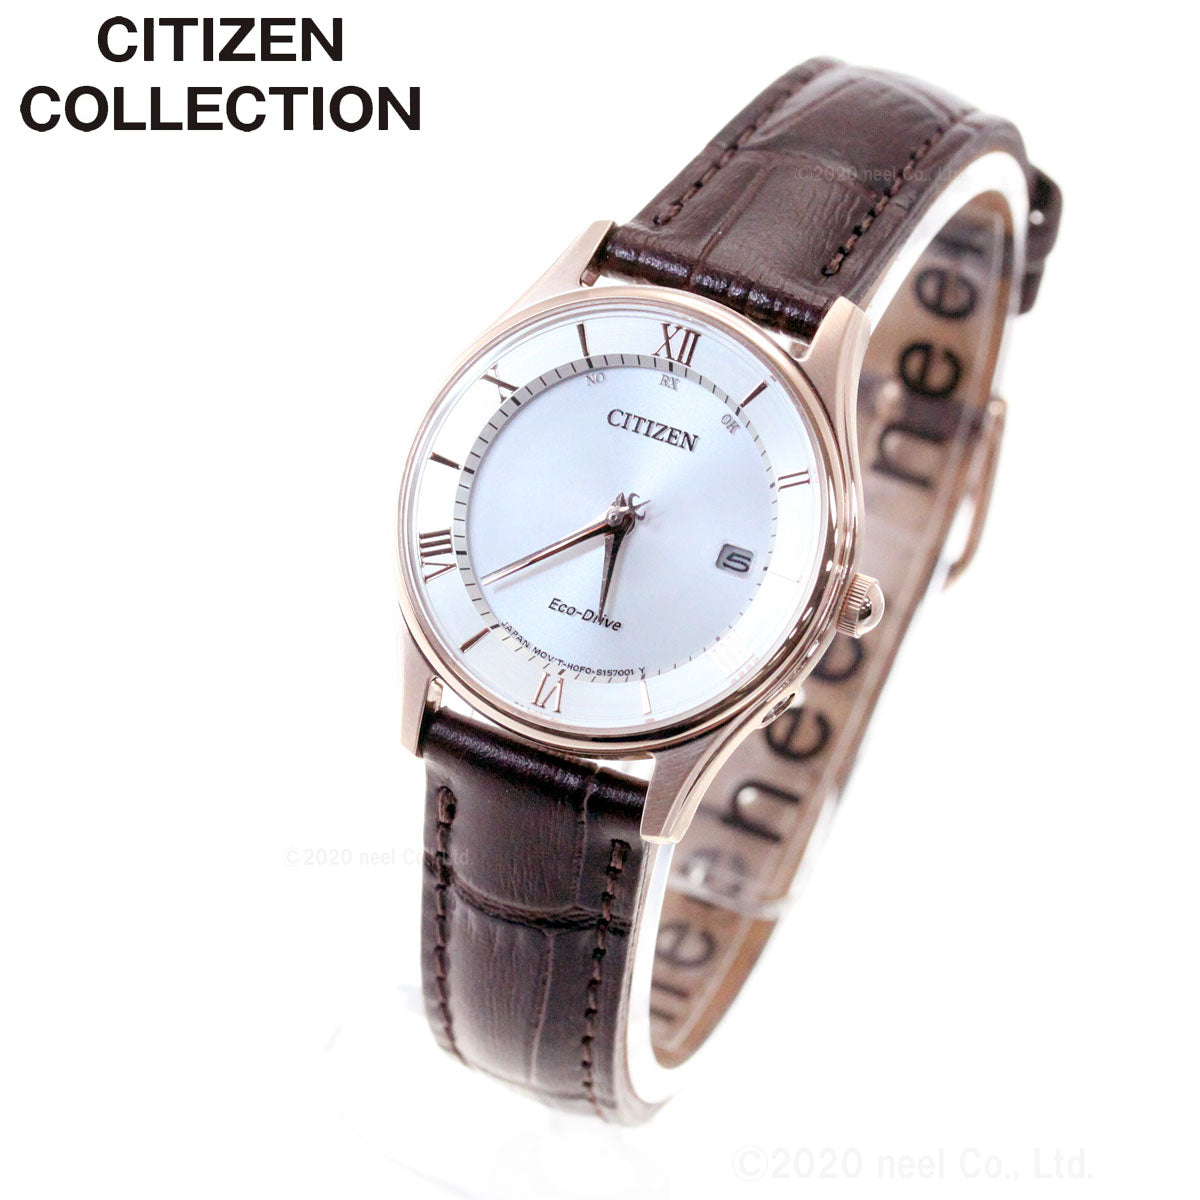 シチズンコレクション CITIZEN COLLECTION エコドライブ ソーラー 電波時計 腕時計 レディース 薄型シリーズ ES0002-06A